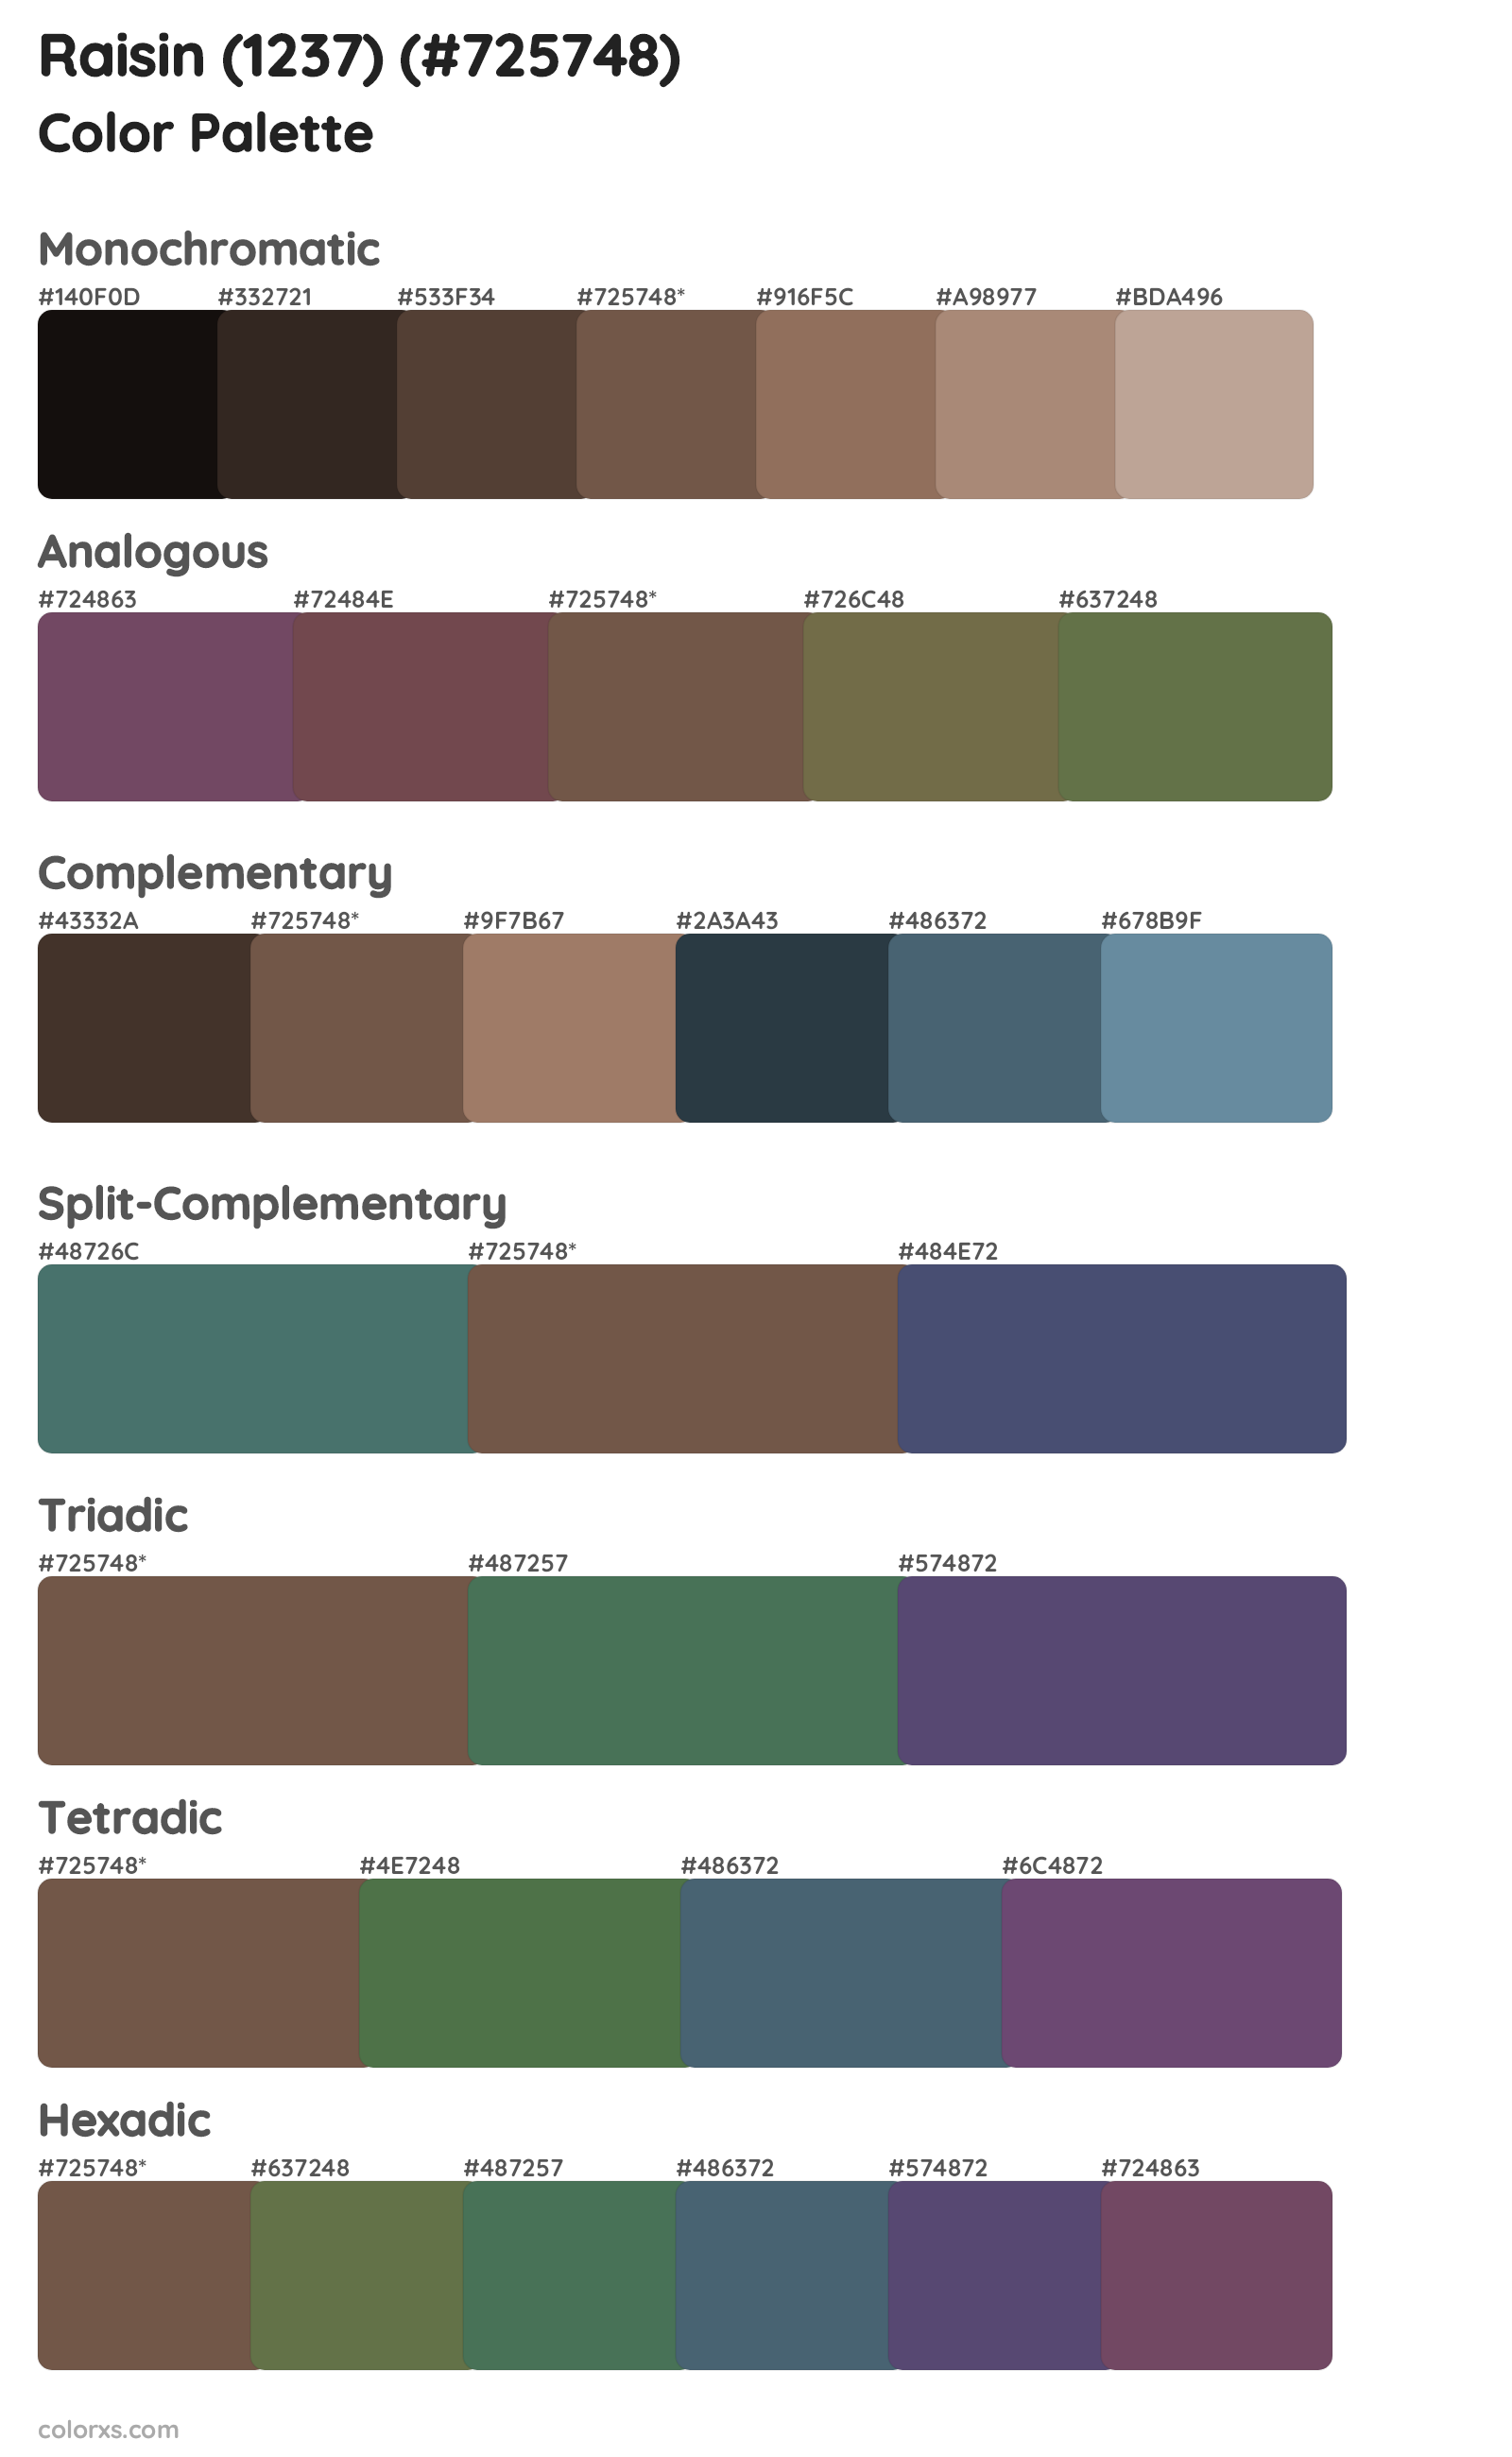 Raisin (1237) Color Scheme Palettes